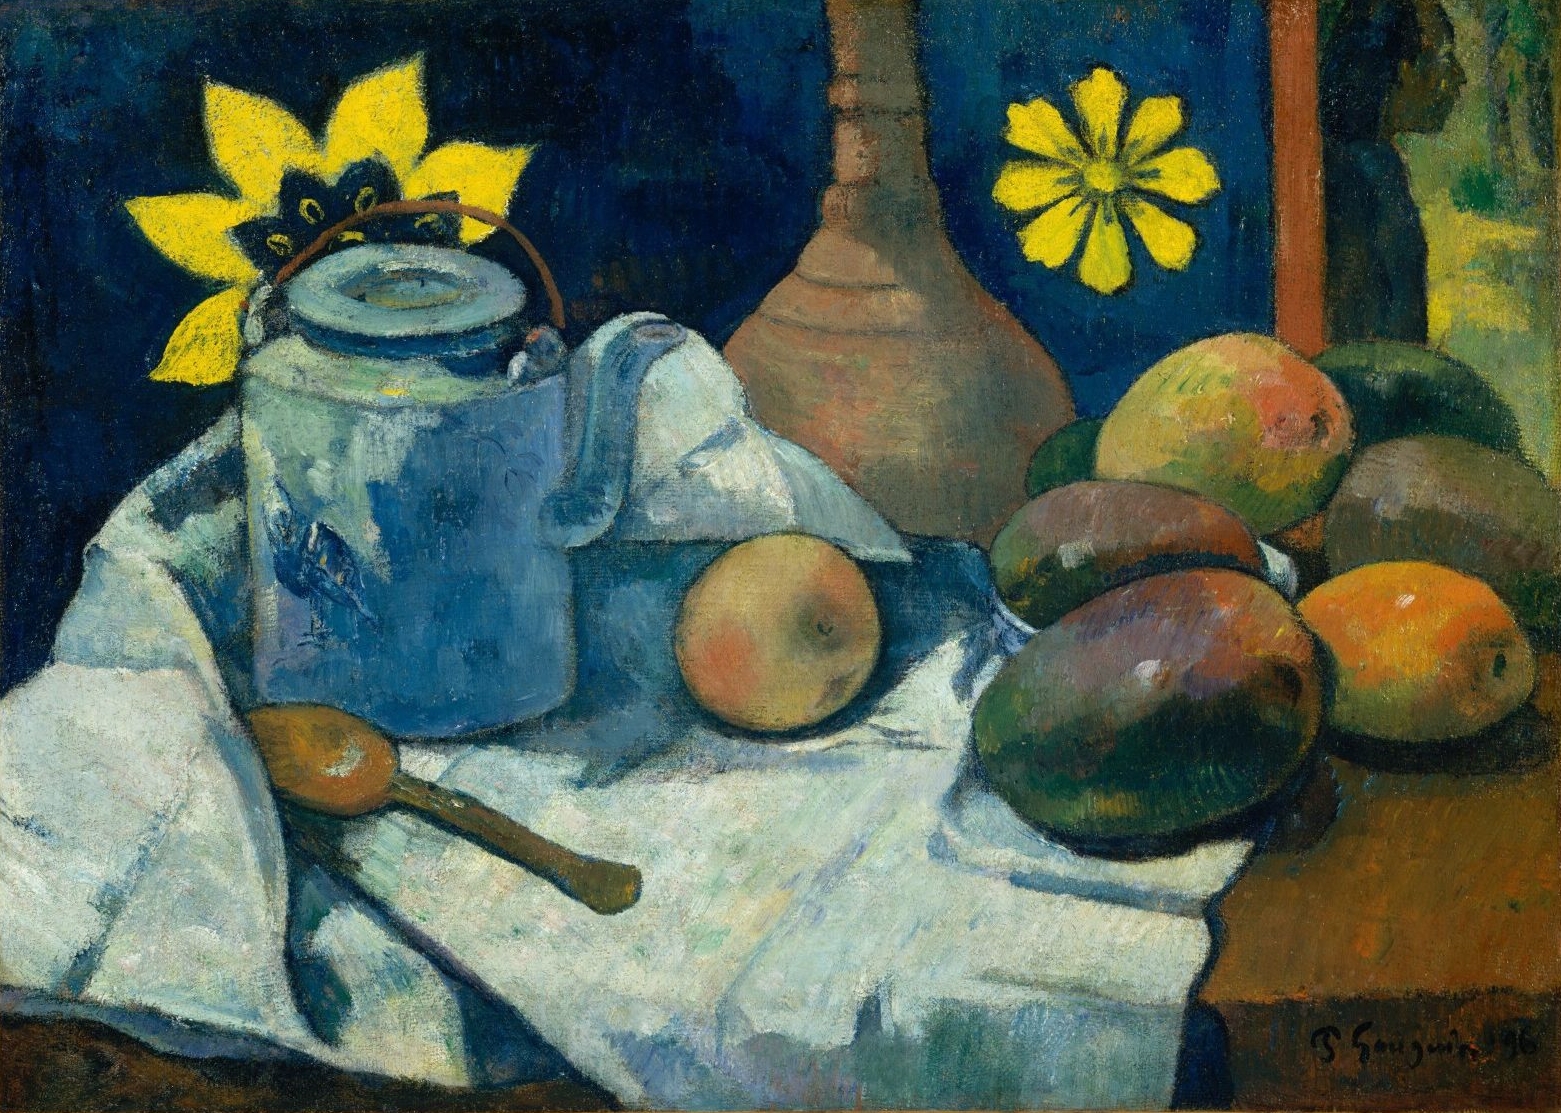 Paul+Gauguin-1848-1903 (365).jpg